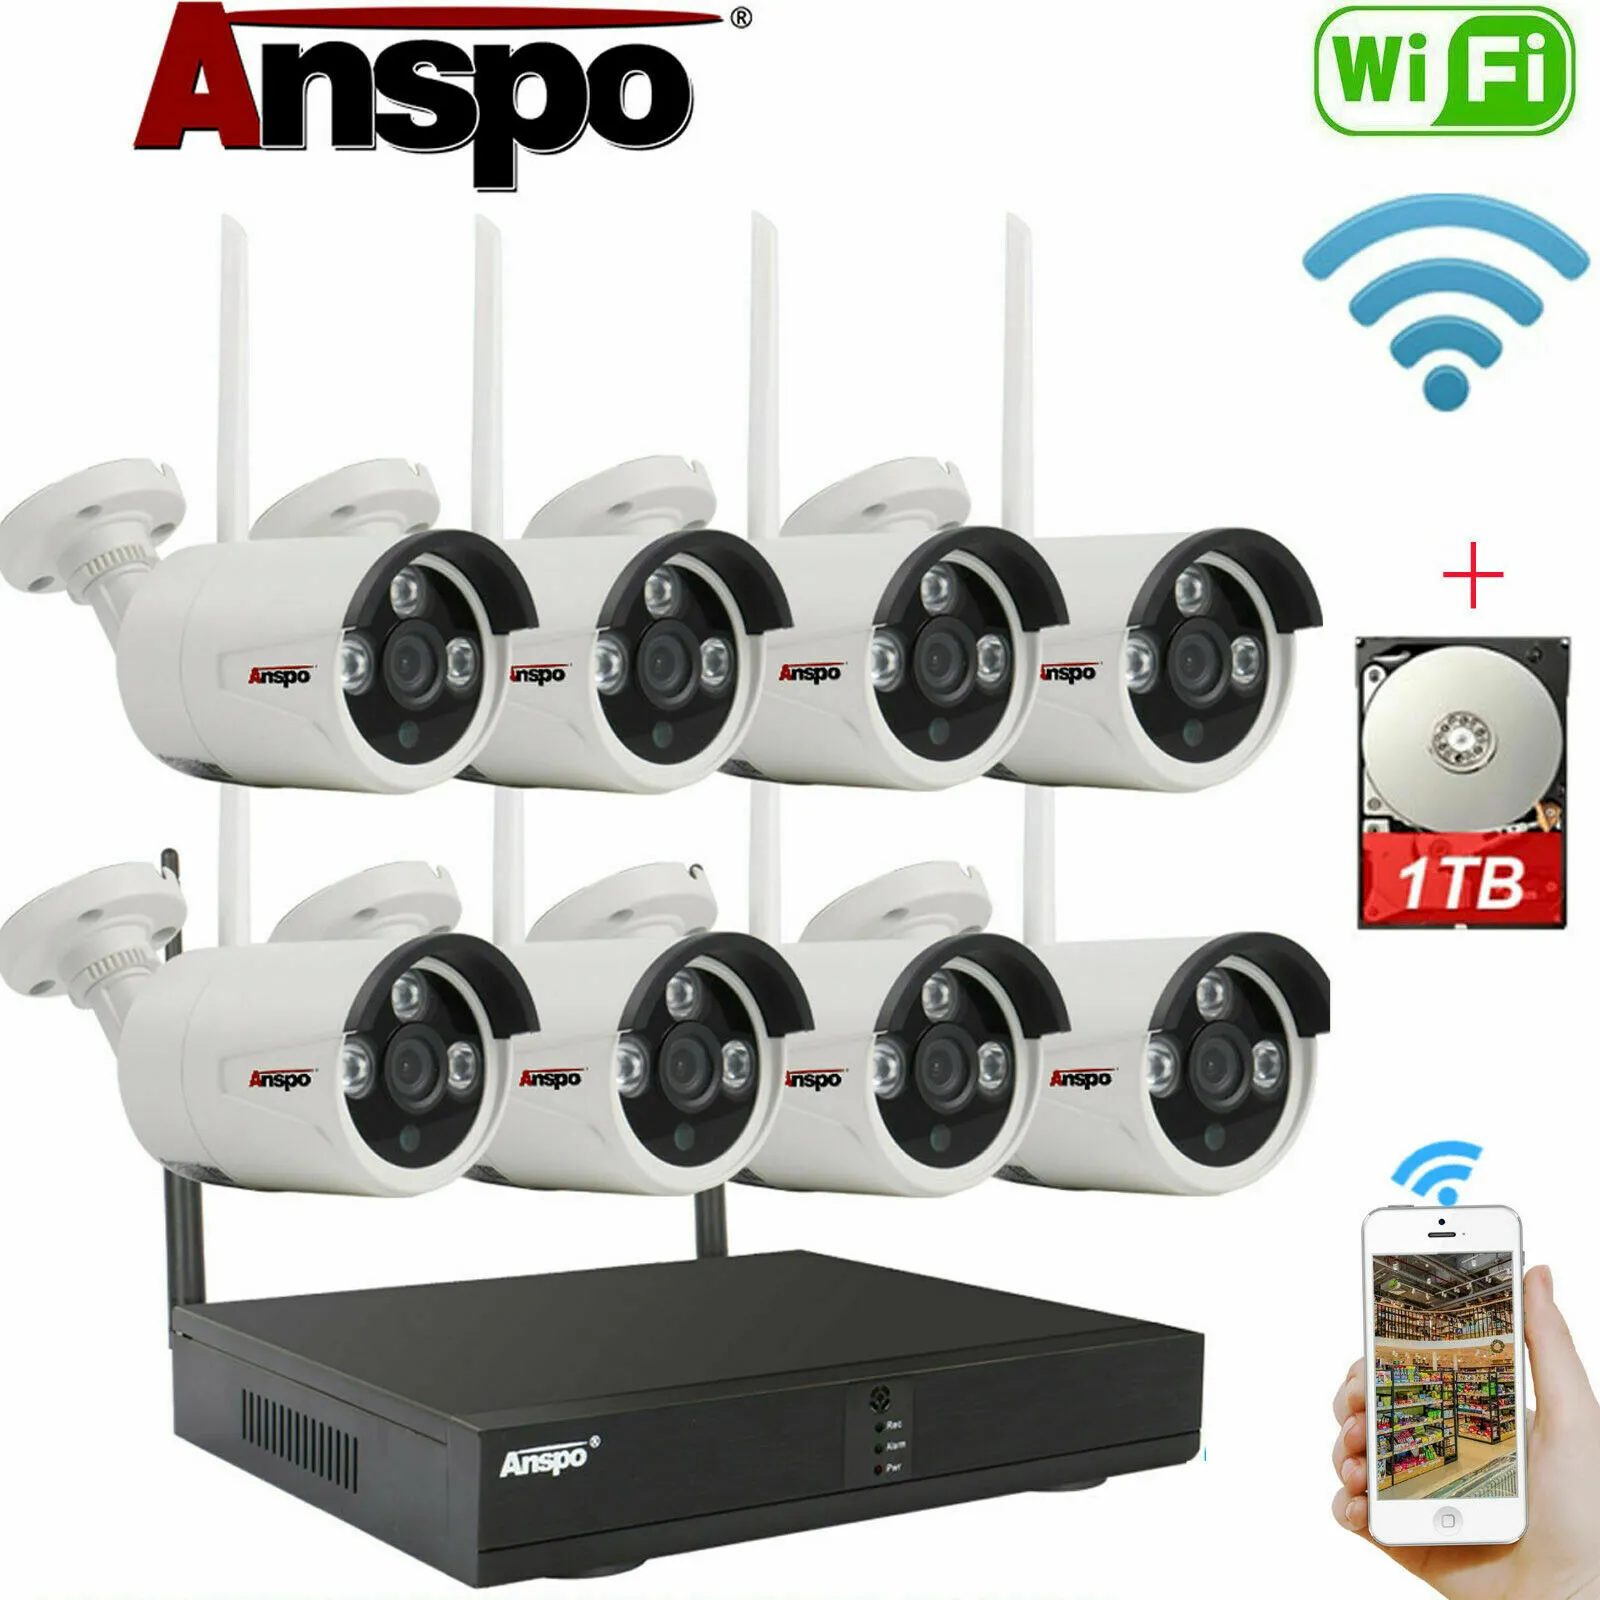 ANSPO 8CH System bezprzewodowy Security Camera System WIFI Zestaw kamer IR-Cut Night Vision CCTV Nadzór domowy NVR z dysk twardy 1TB